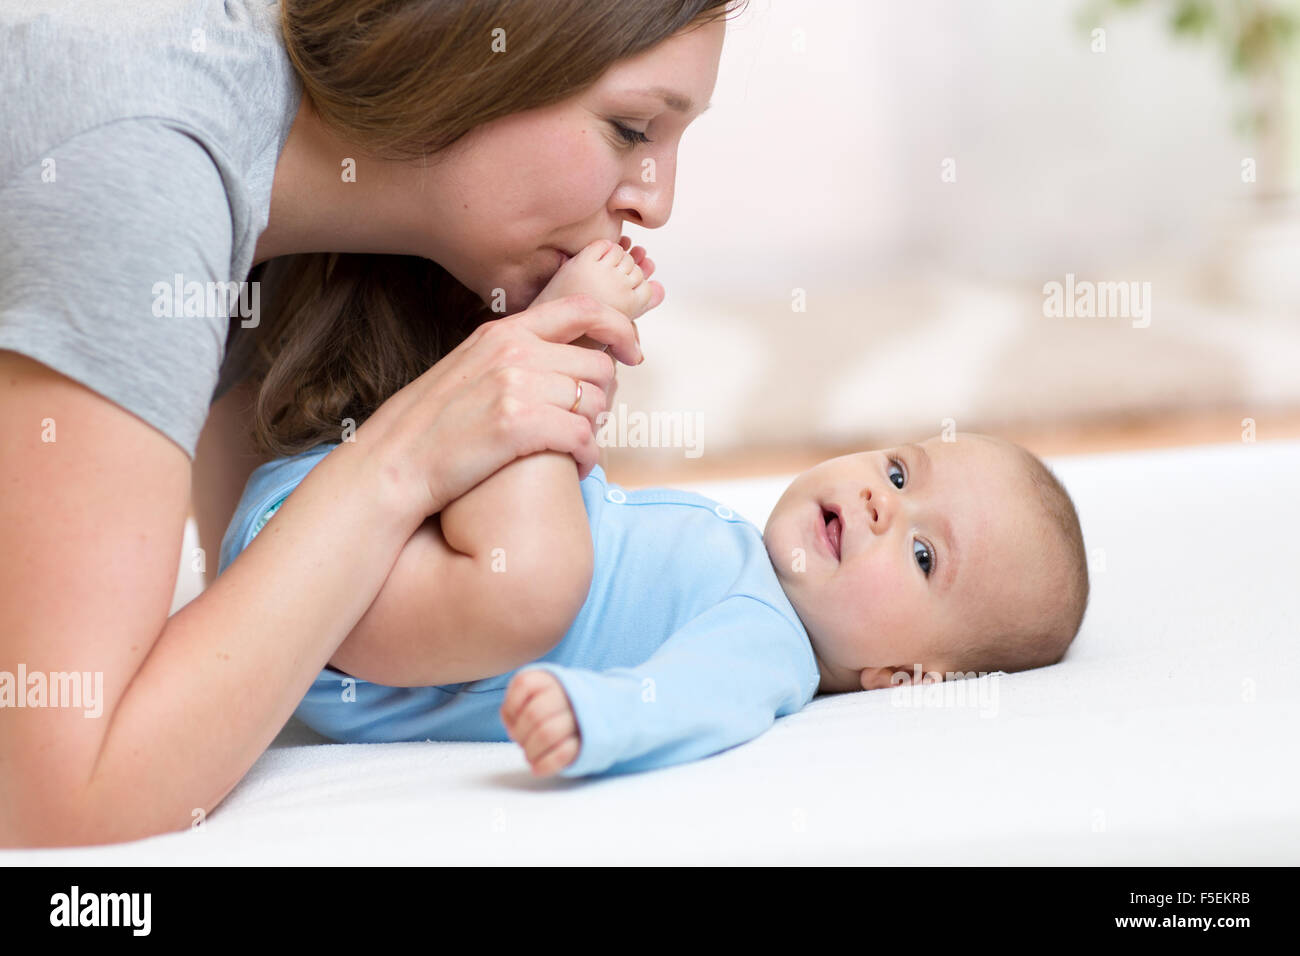 Mutter küsst Baby Tochter Füße beim Spielen auf einem weißen Bett Stockfoto